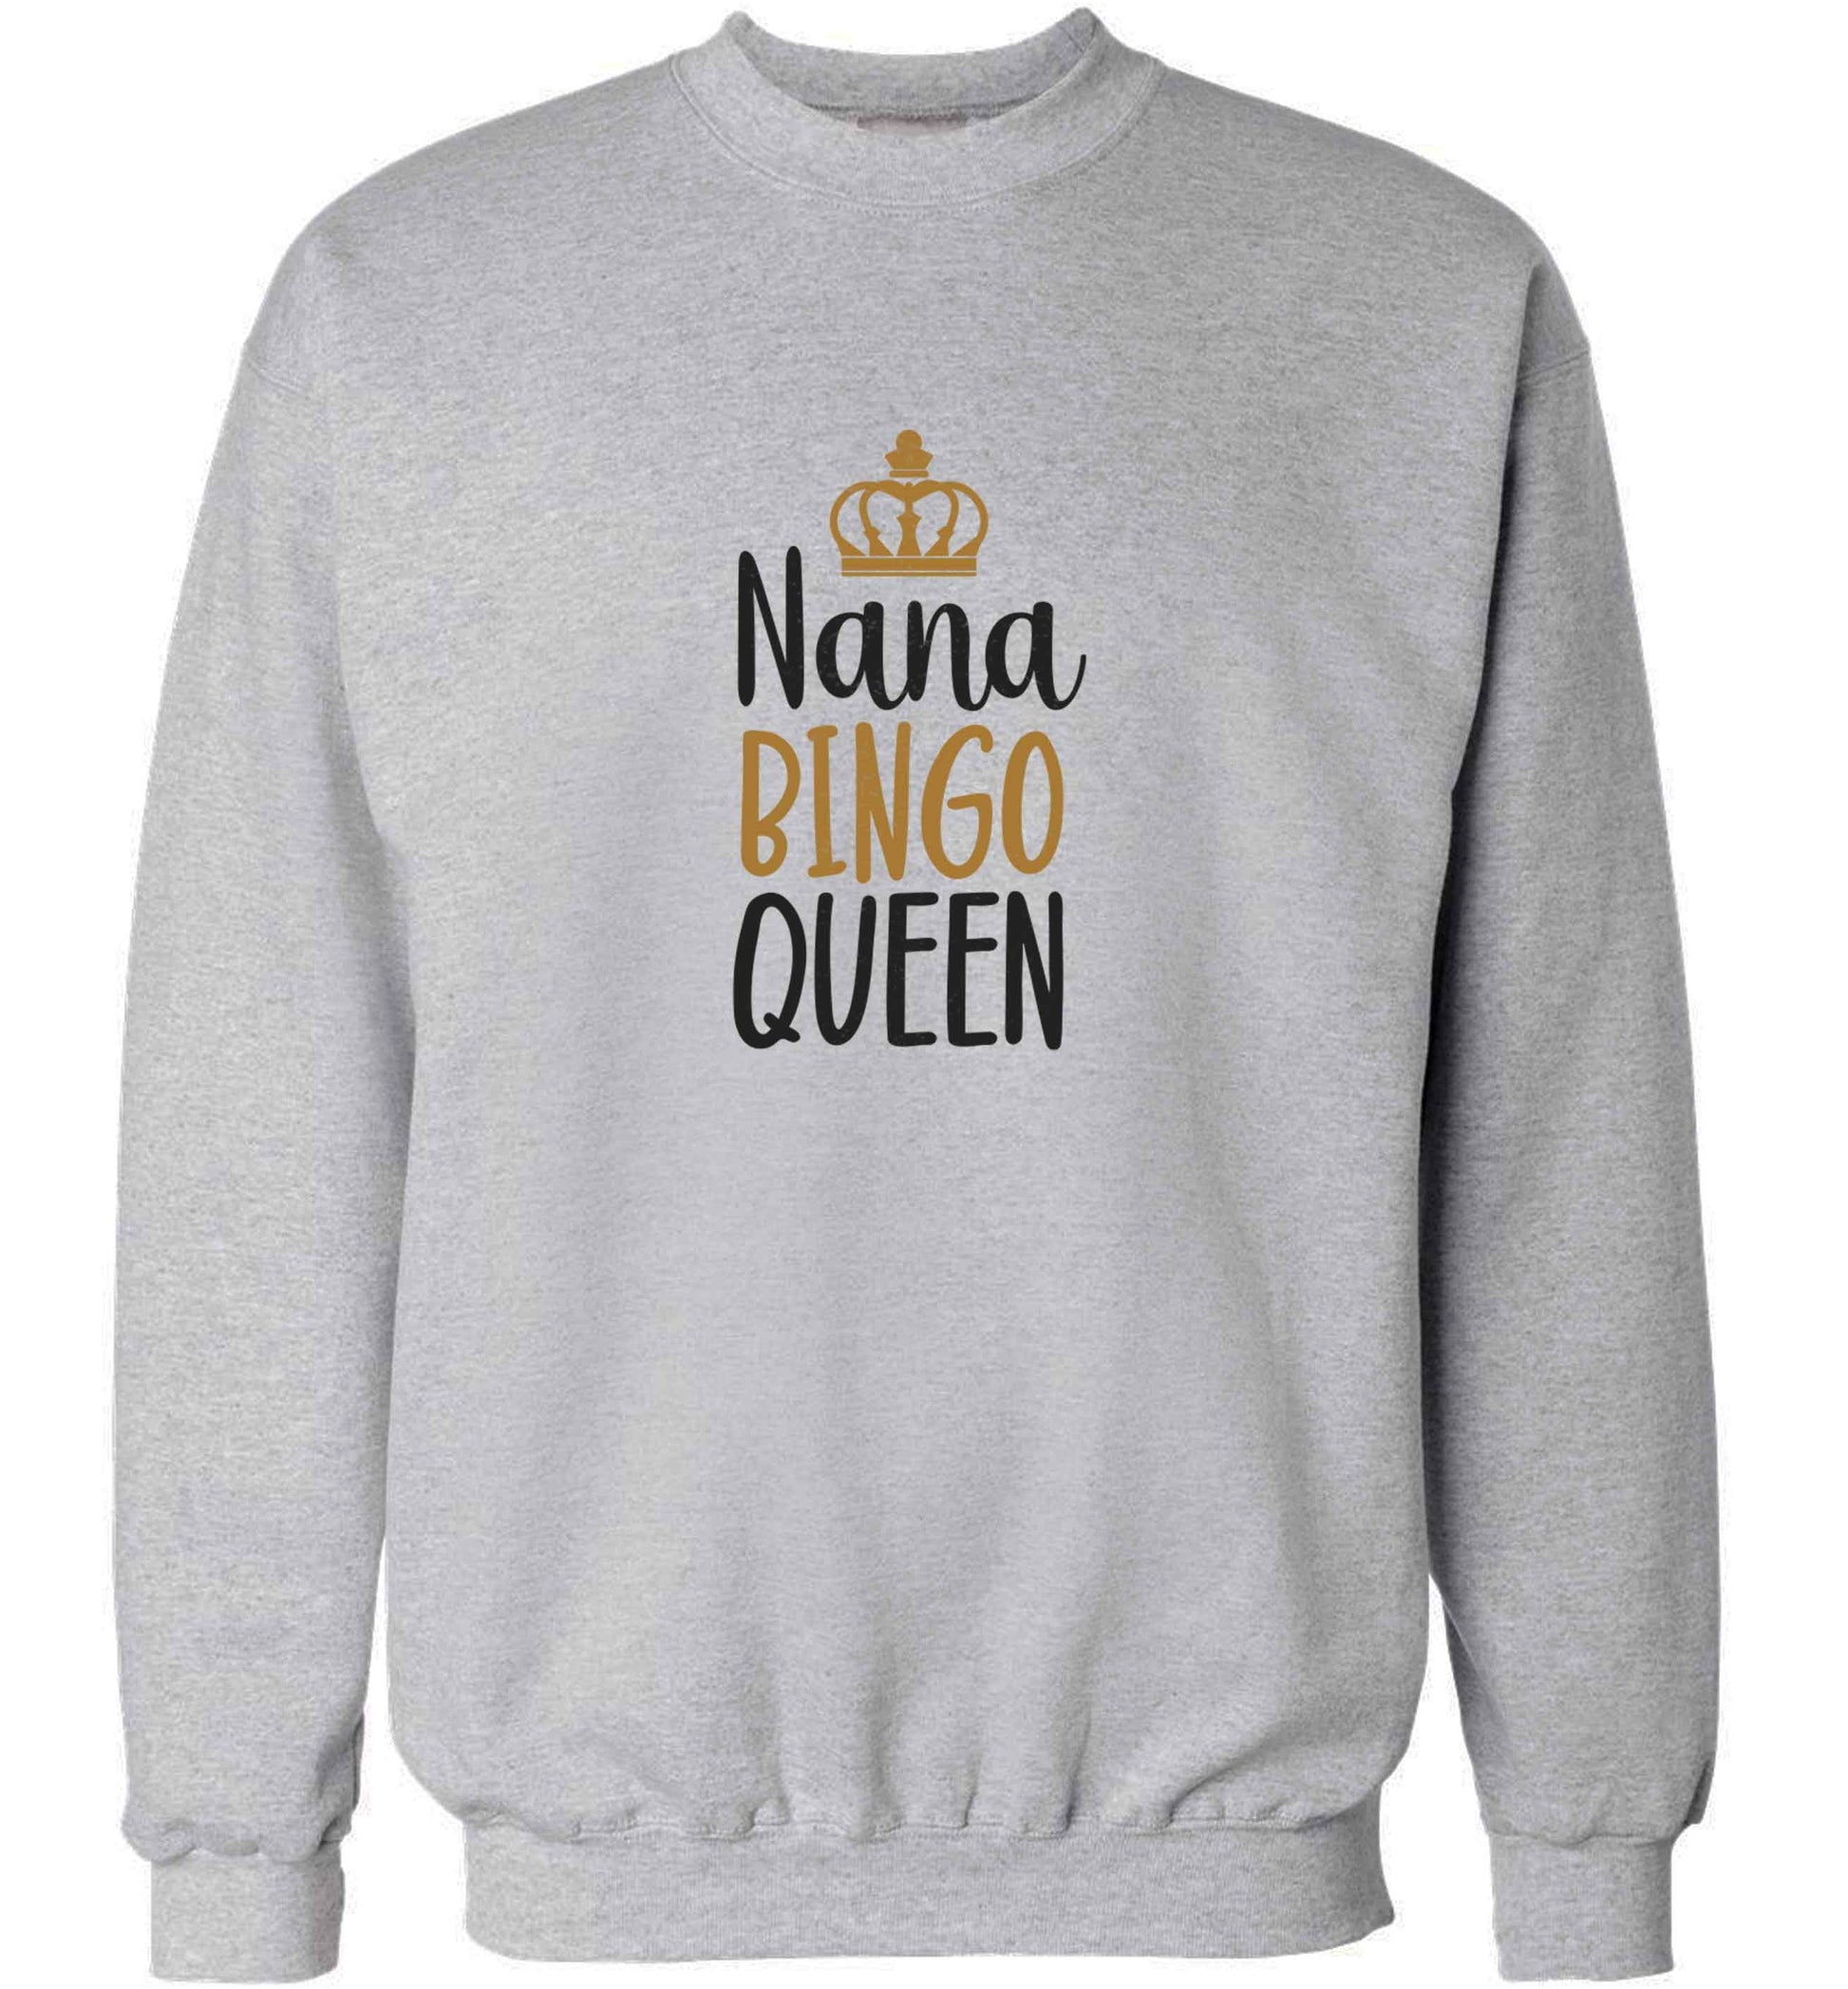 Personalised bingo queen adult's unisex grey sweater 2XL